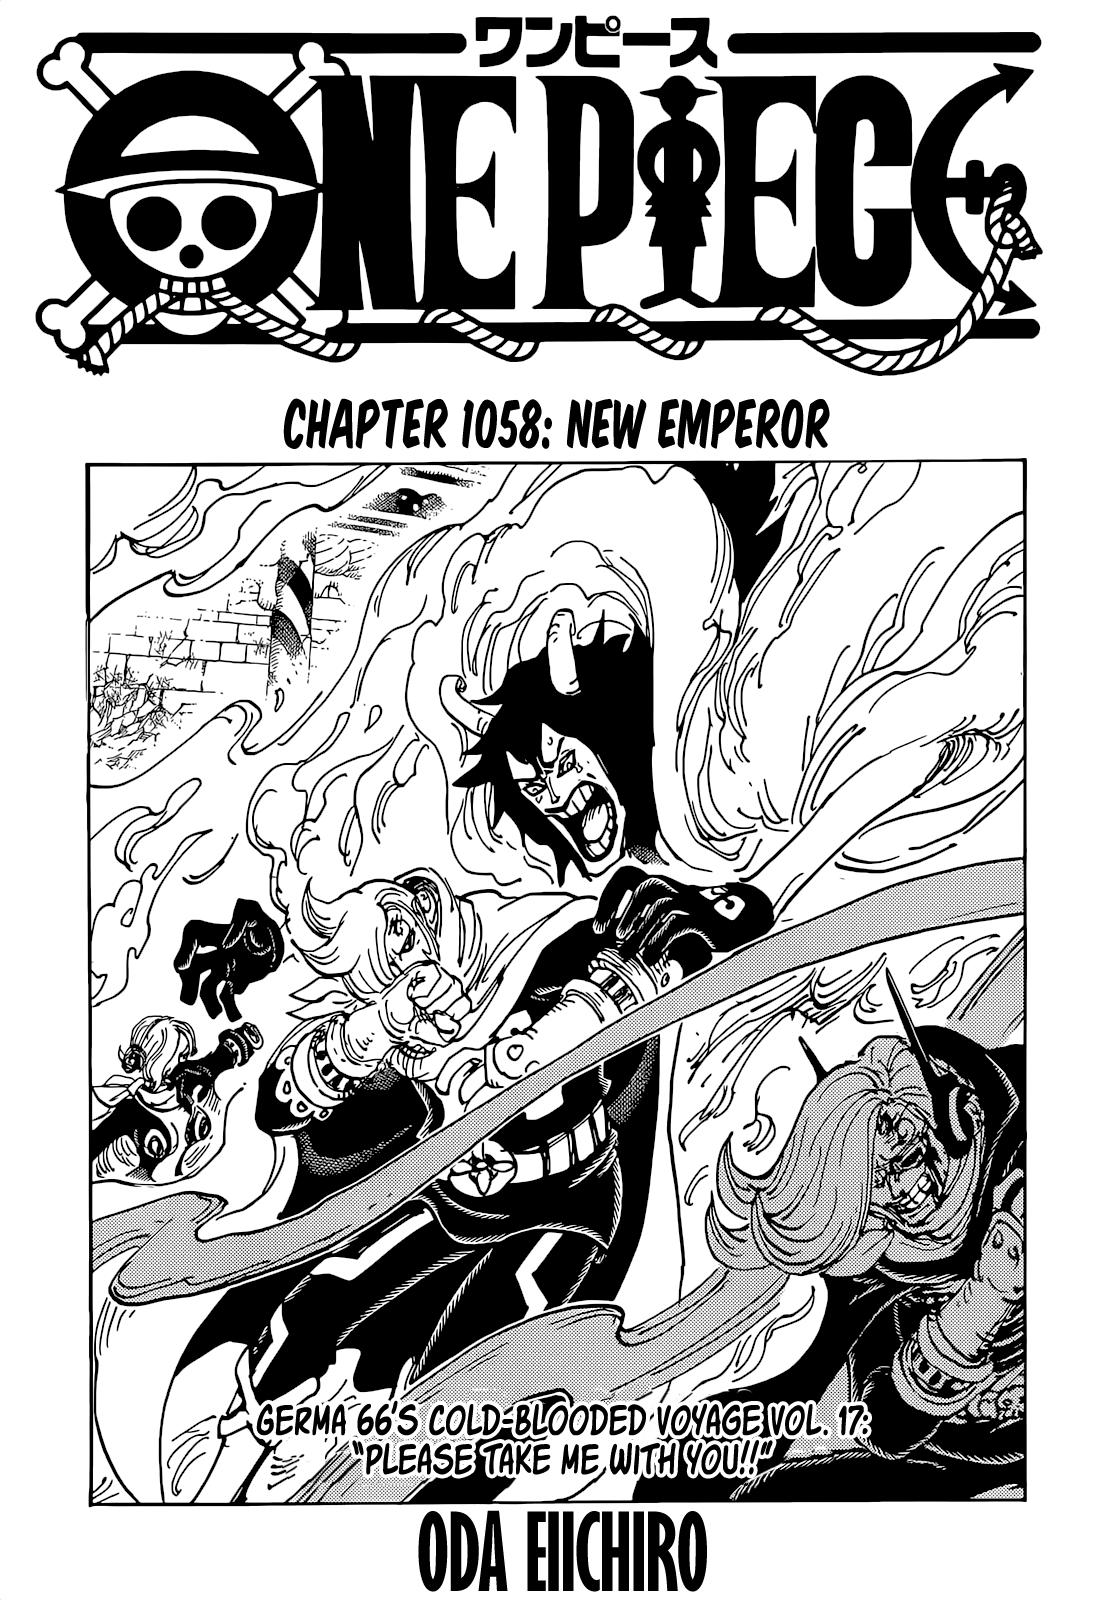 Read One Piece Chapter 1058 On Mangakakalot